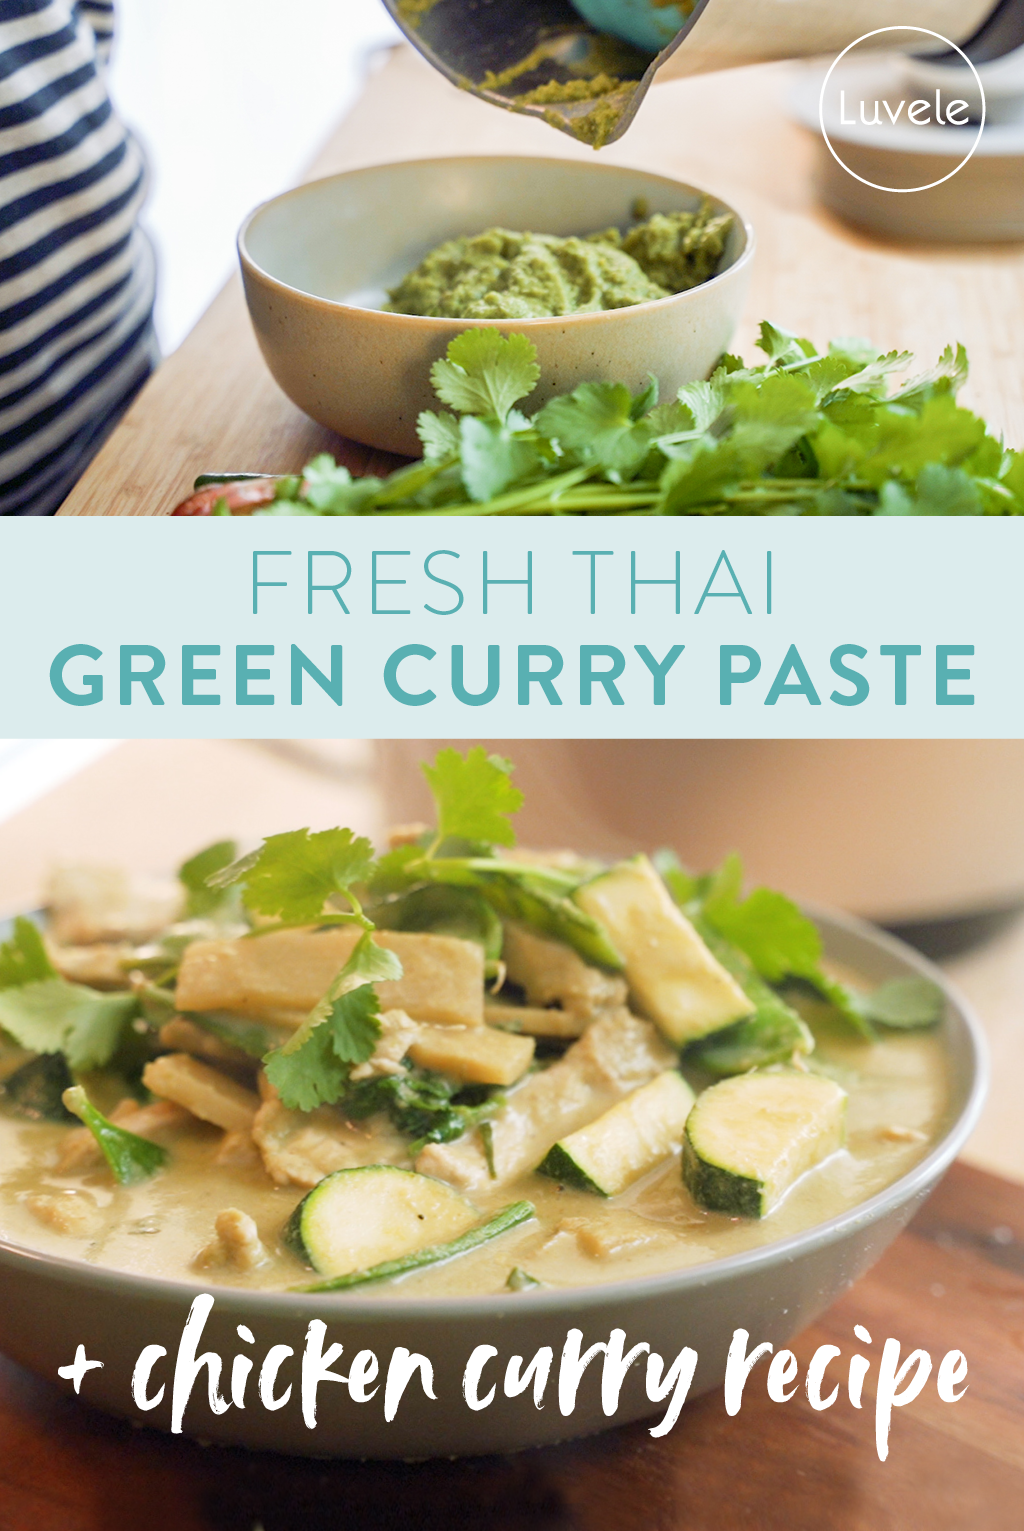 Fresh Thai green curry paste